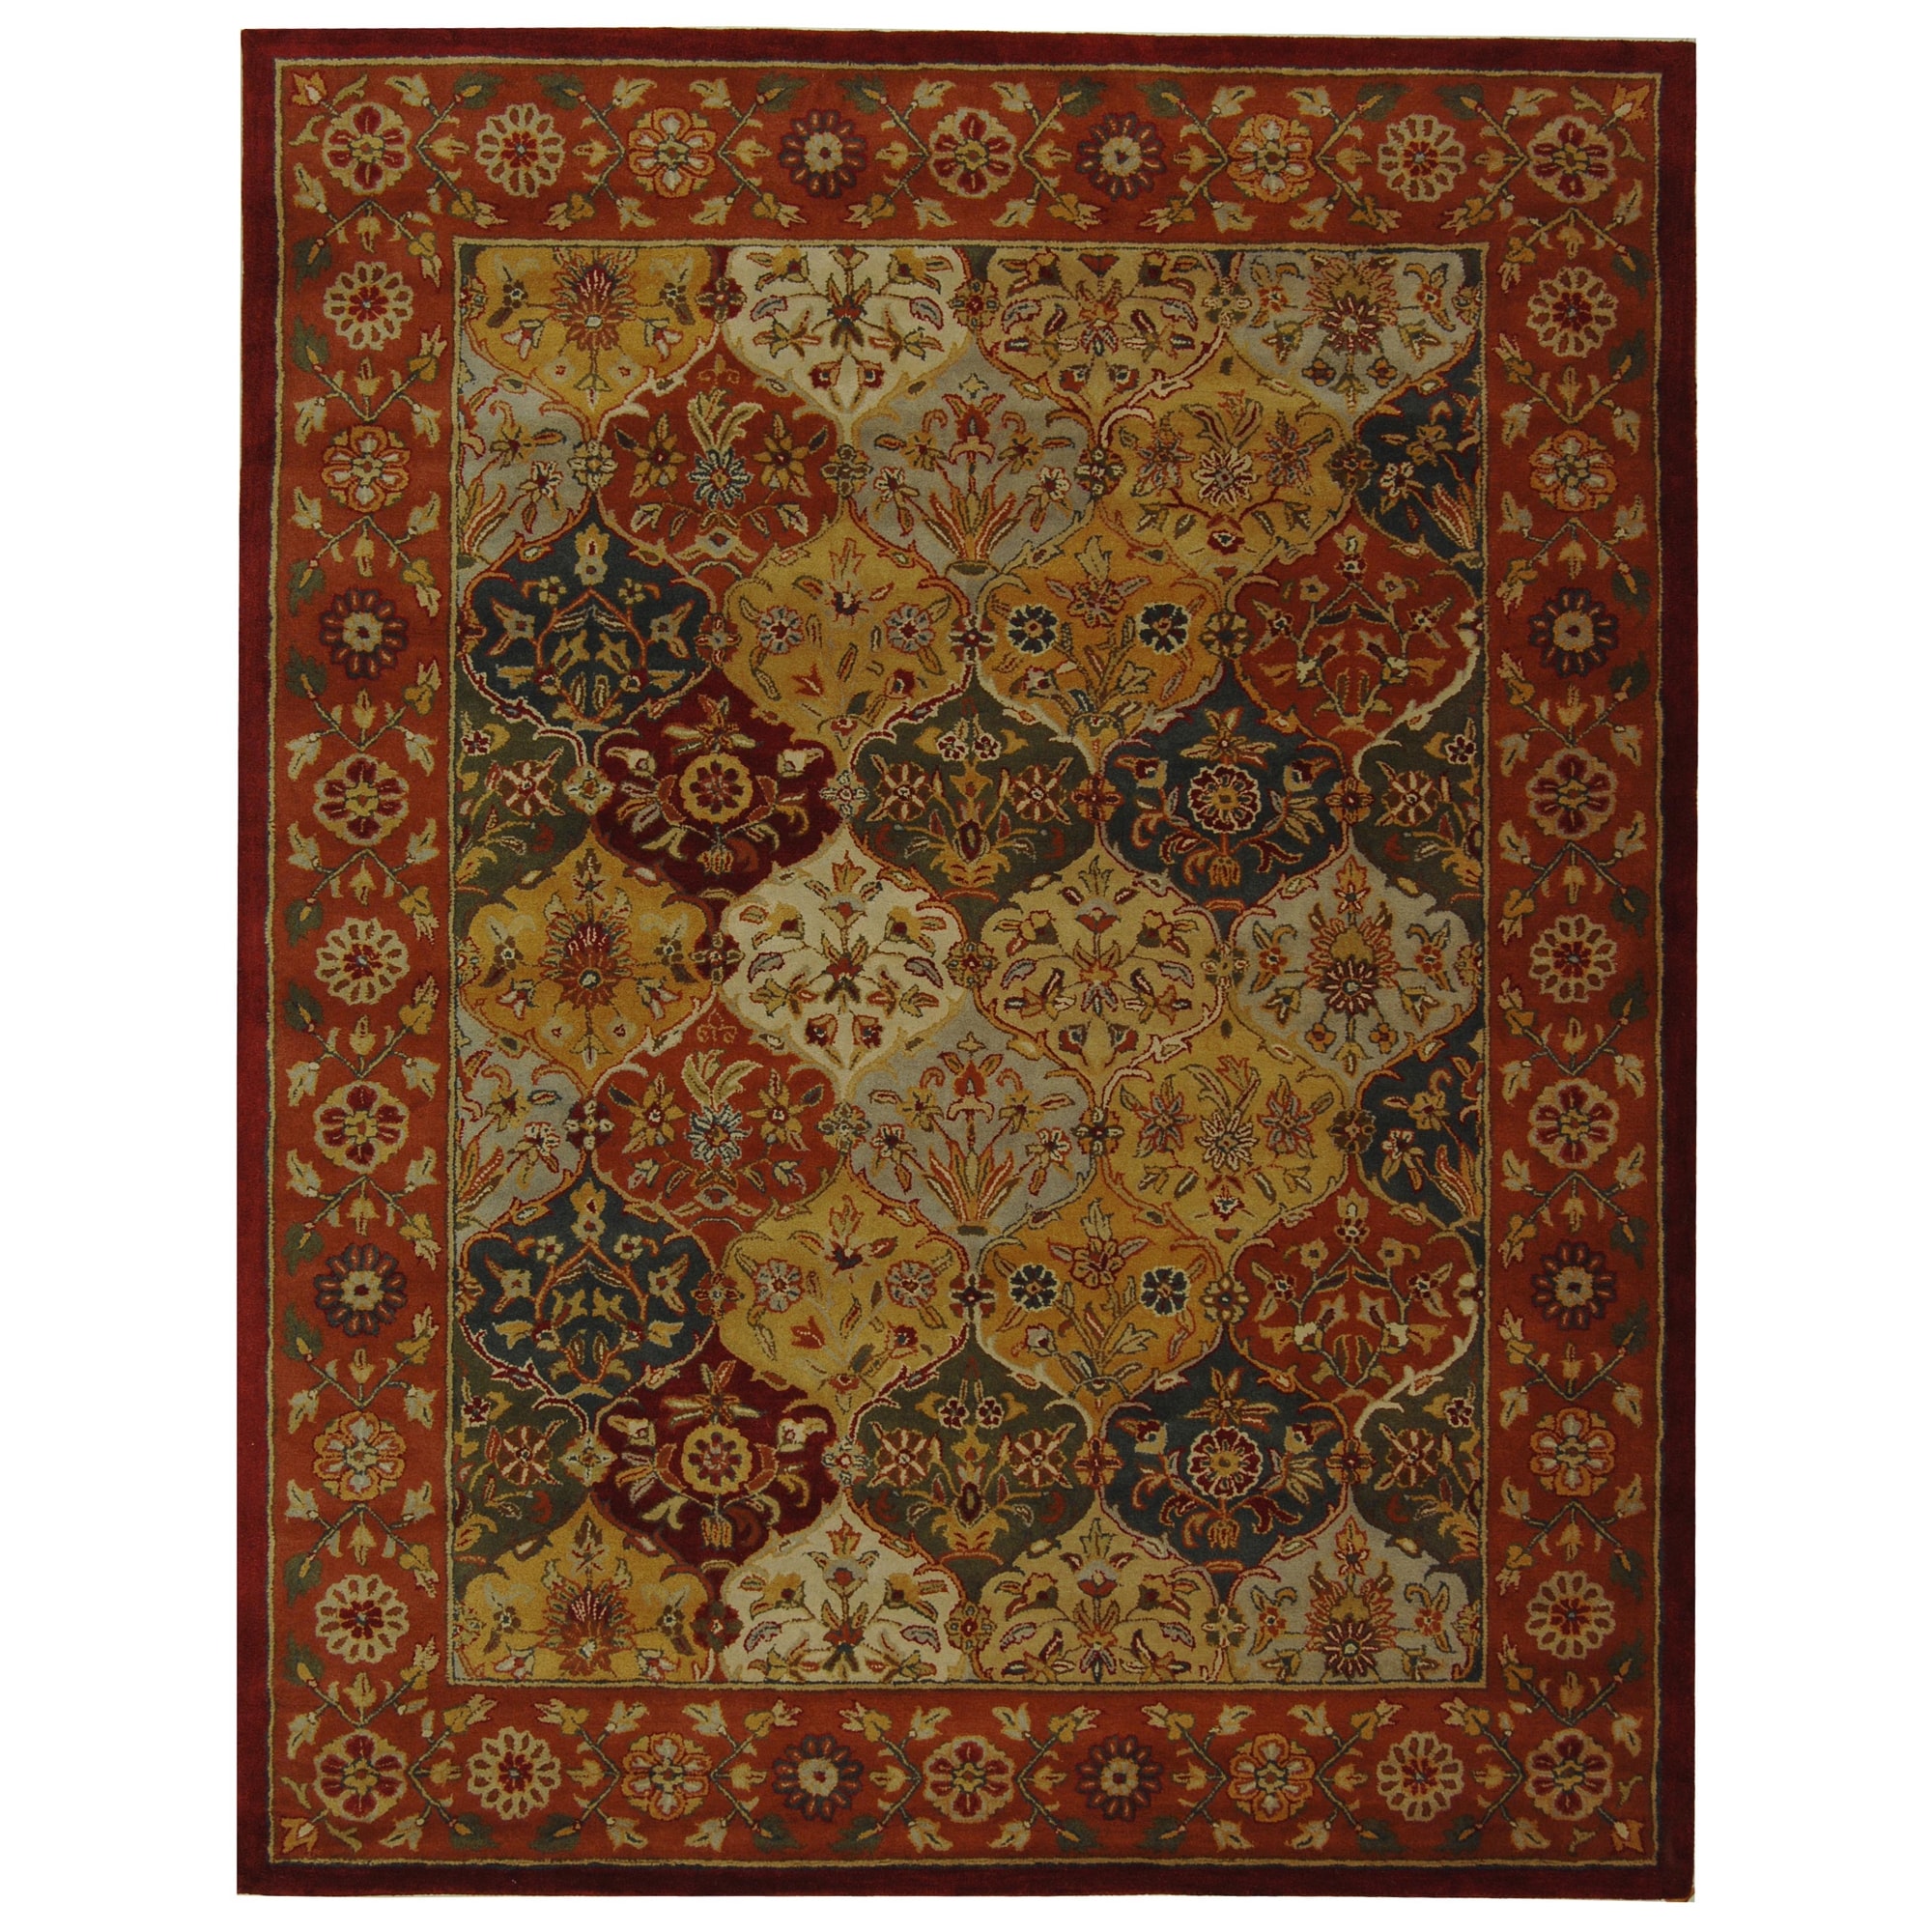 Handmade Heritage Bakhtiari Multicolored/red Wool Area Rug (6 X 9)